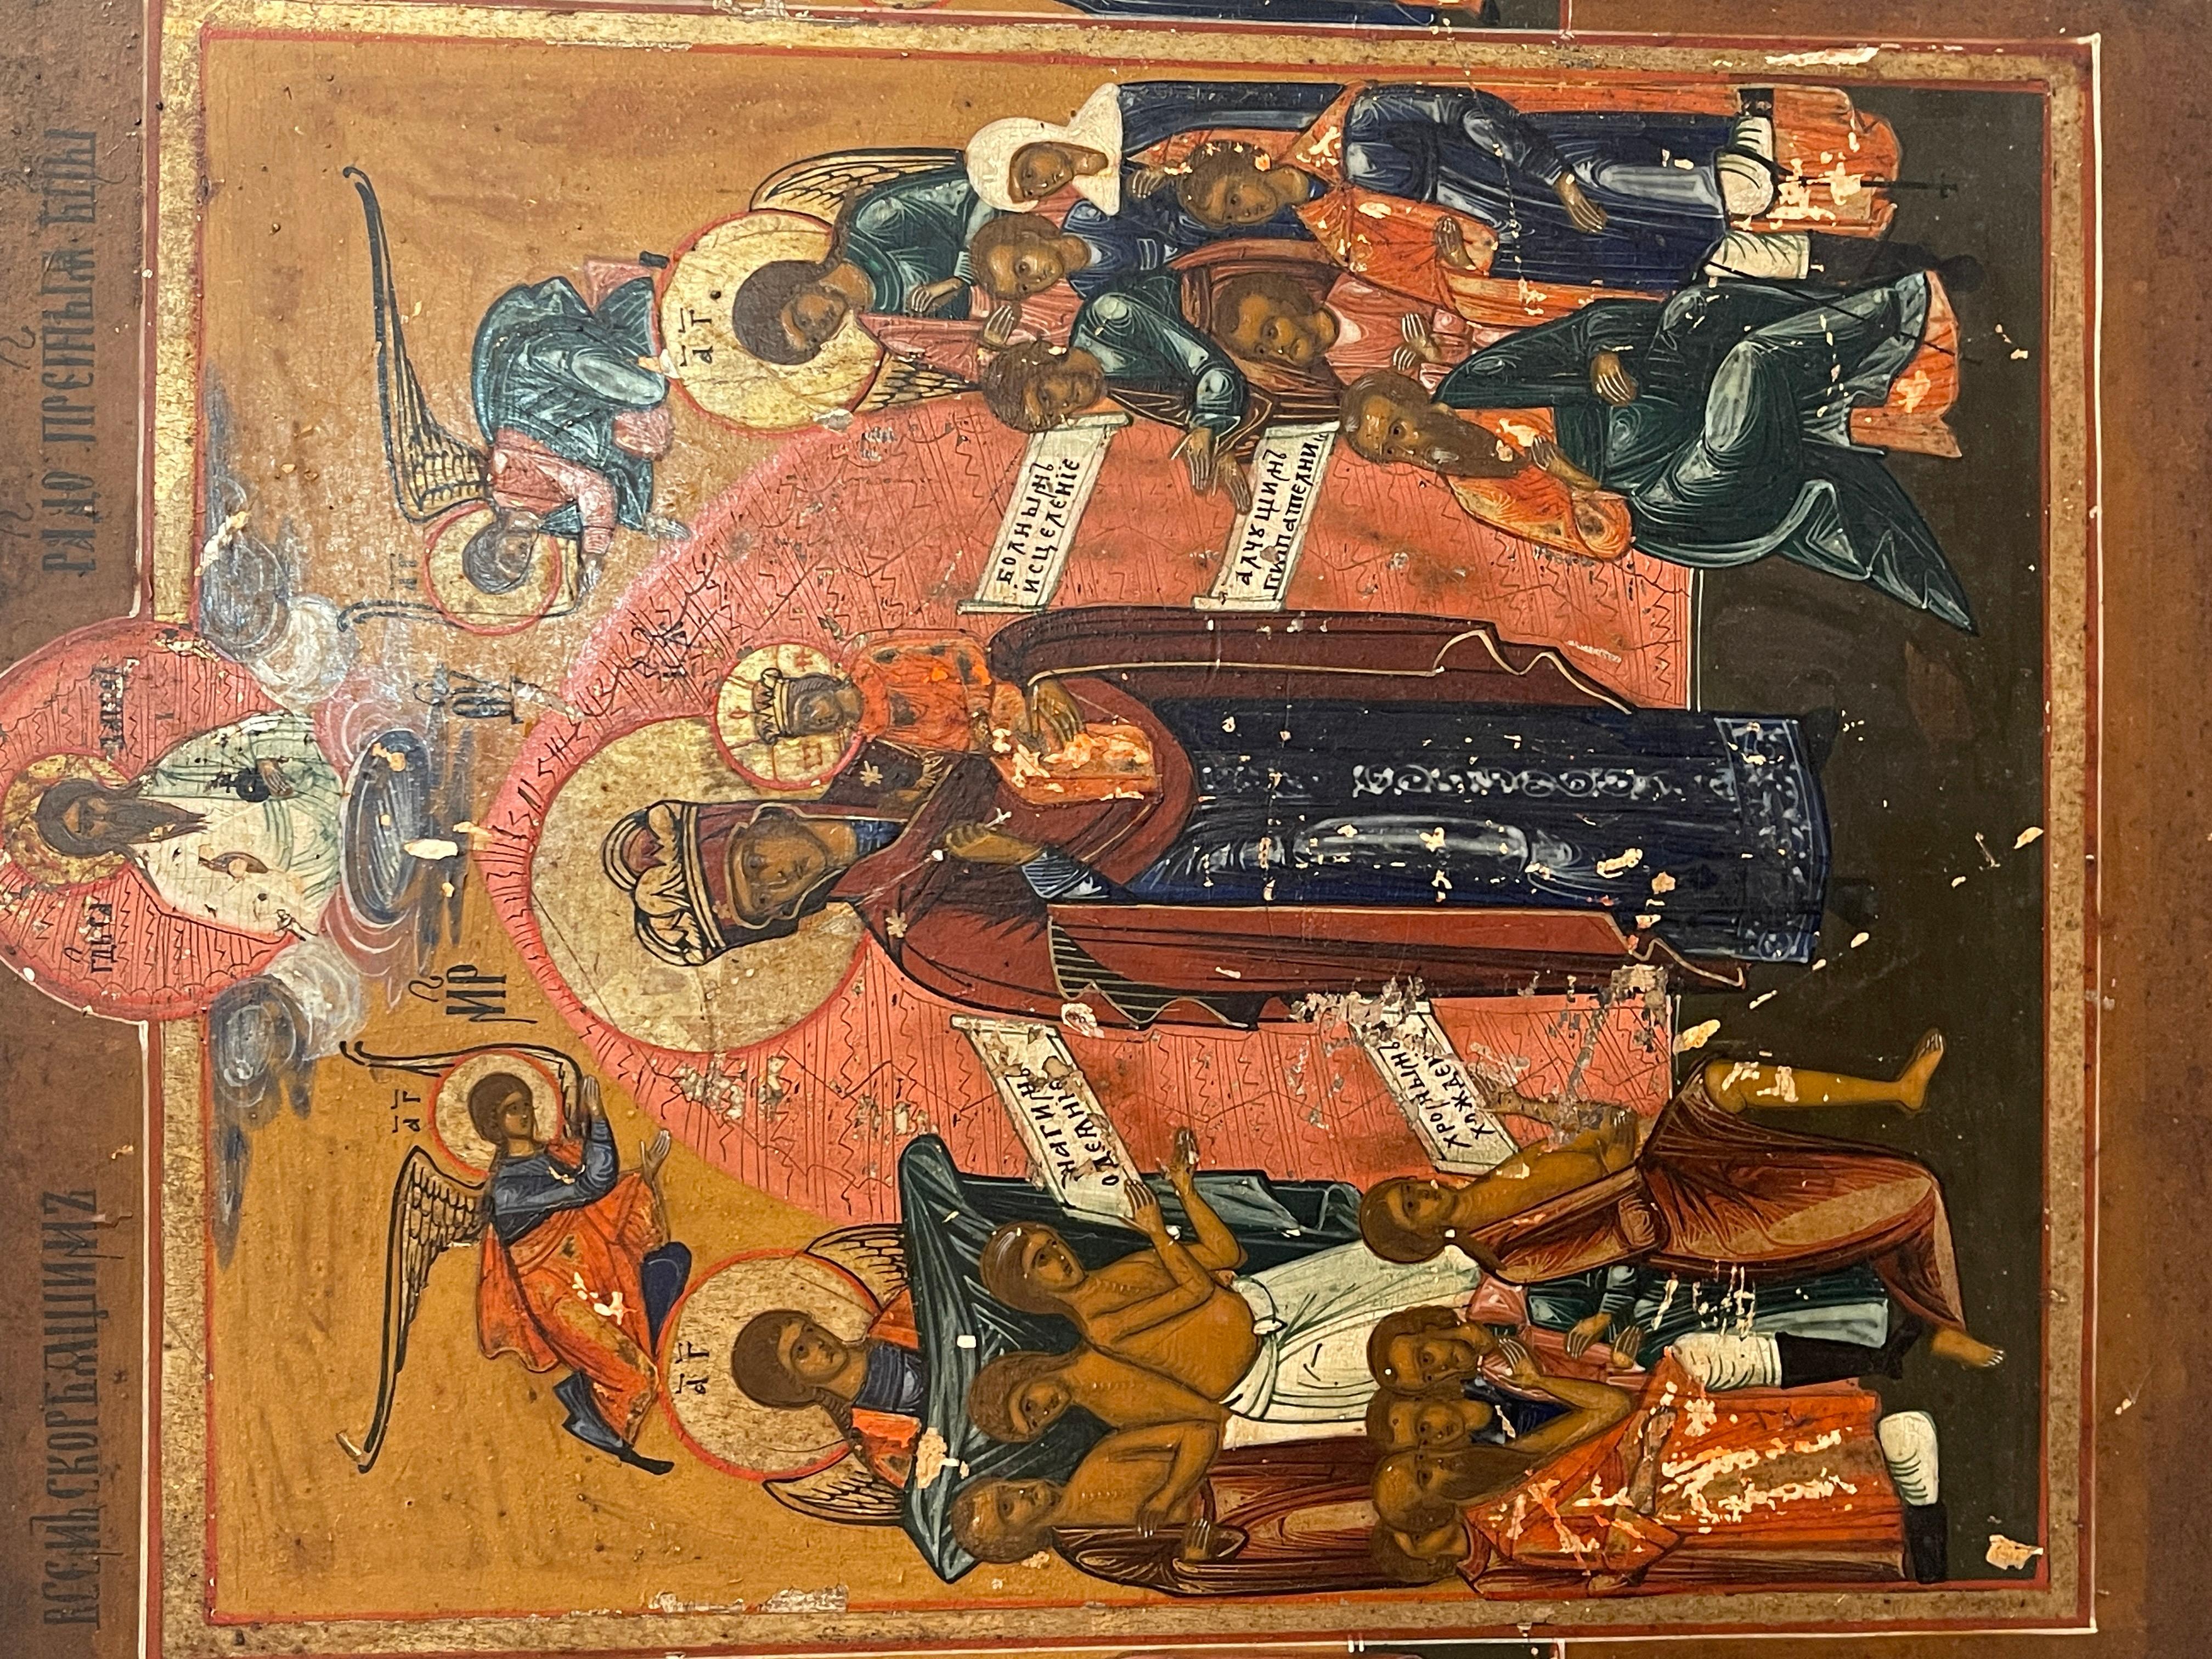 Icone ancienne de belle facture, datant du XIXe siècle, russe. 
L'icône représente la Vierge au centre avec l'Enfant, entourée d'anges et d'apôtres.
En bon état, comme le montrent les photos, quelques défauts et signes d'usure dus à